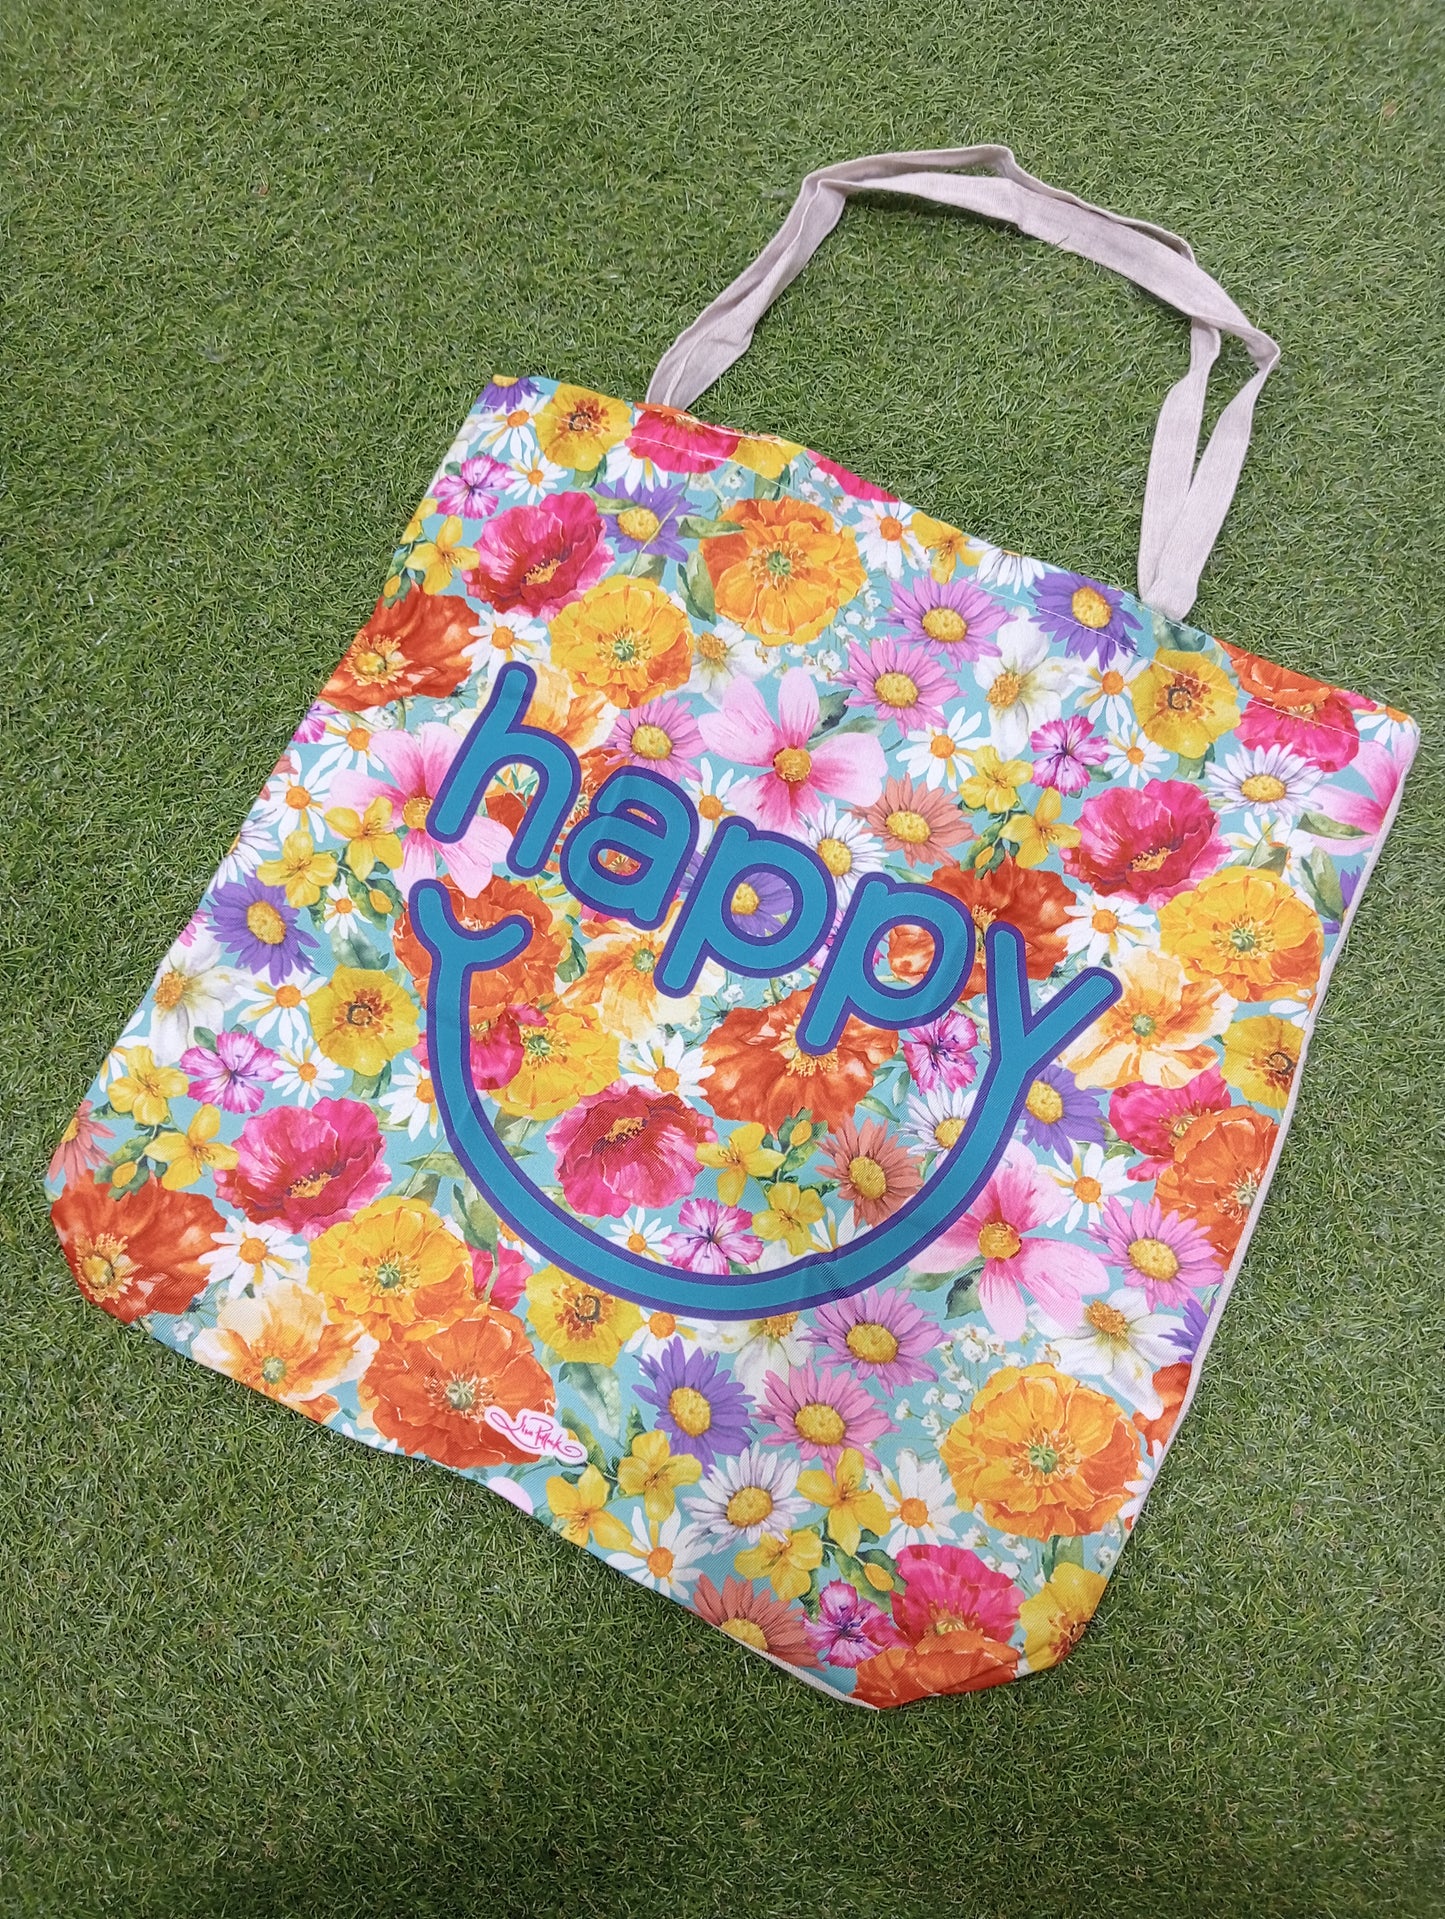 Reusable shopping bag. Happy